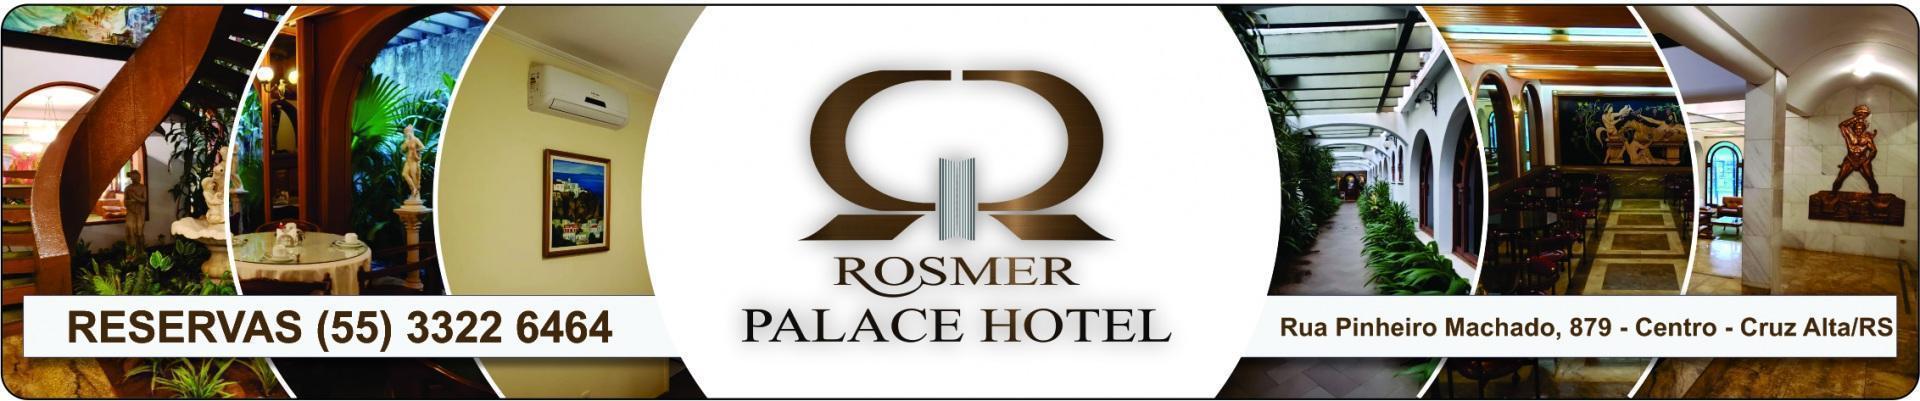 ROSMER PALACE HOTEL